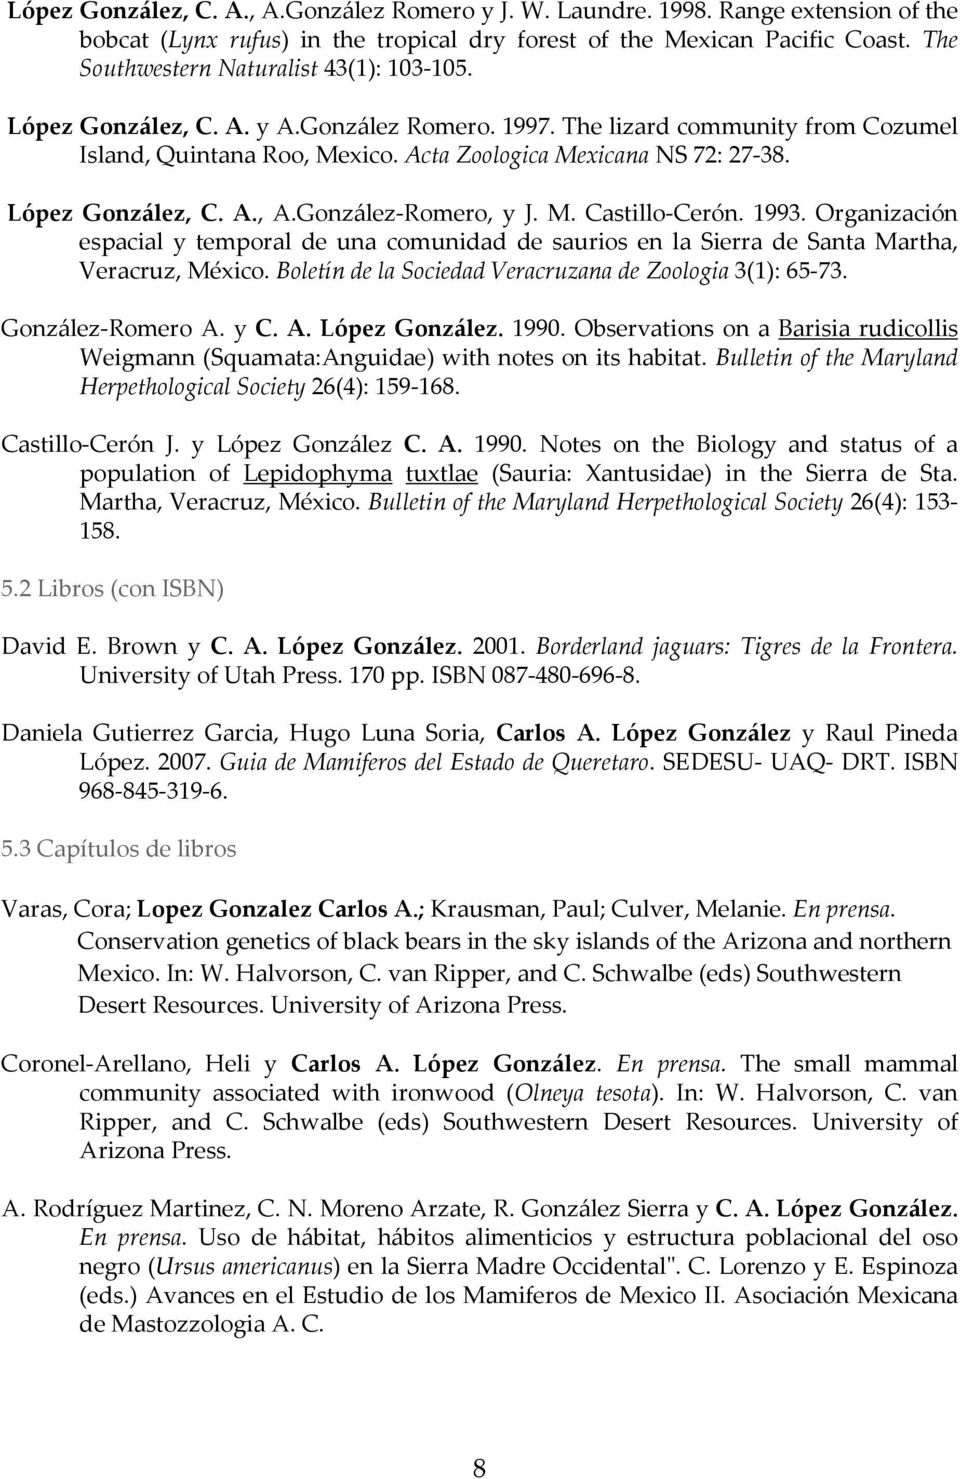 López González, C. A., A.González-Romero, y J. M. Castillo-Cerón. 1993. Organización espacial y temporal de una comunidad de saurios en la Sierra de Santa Martha, Veracruz, México.